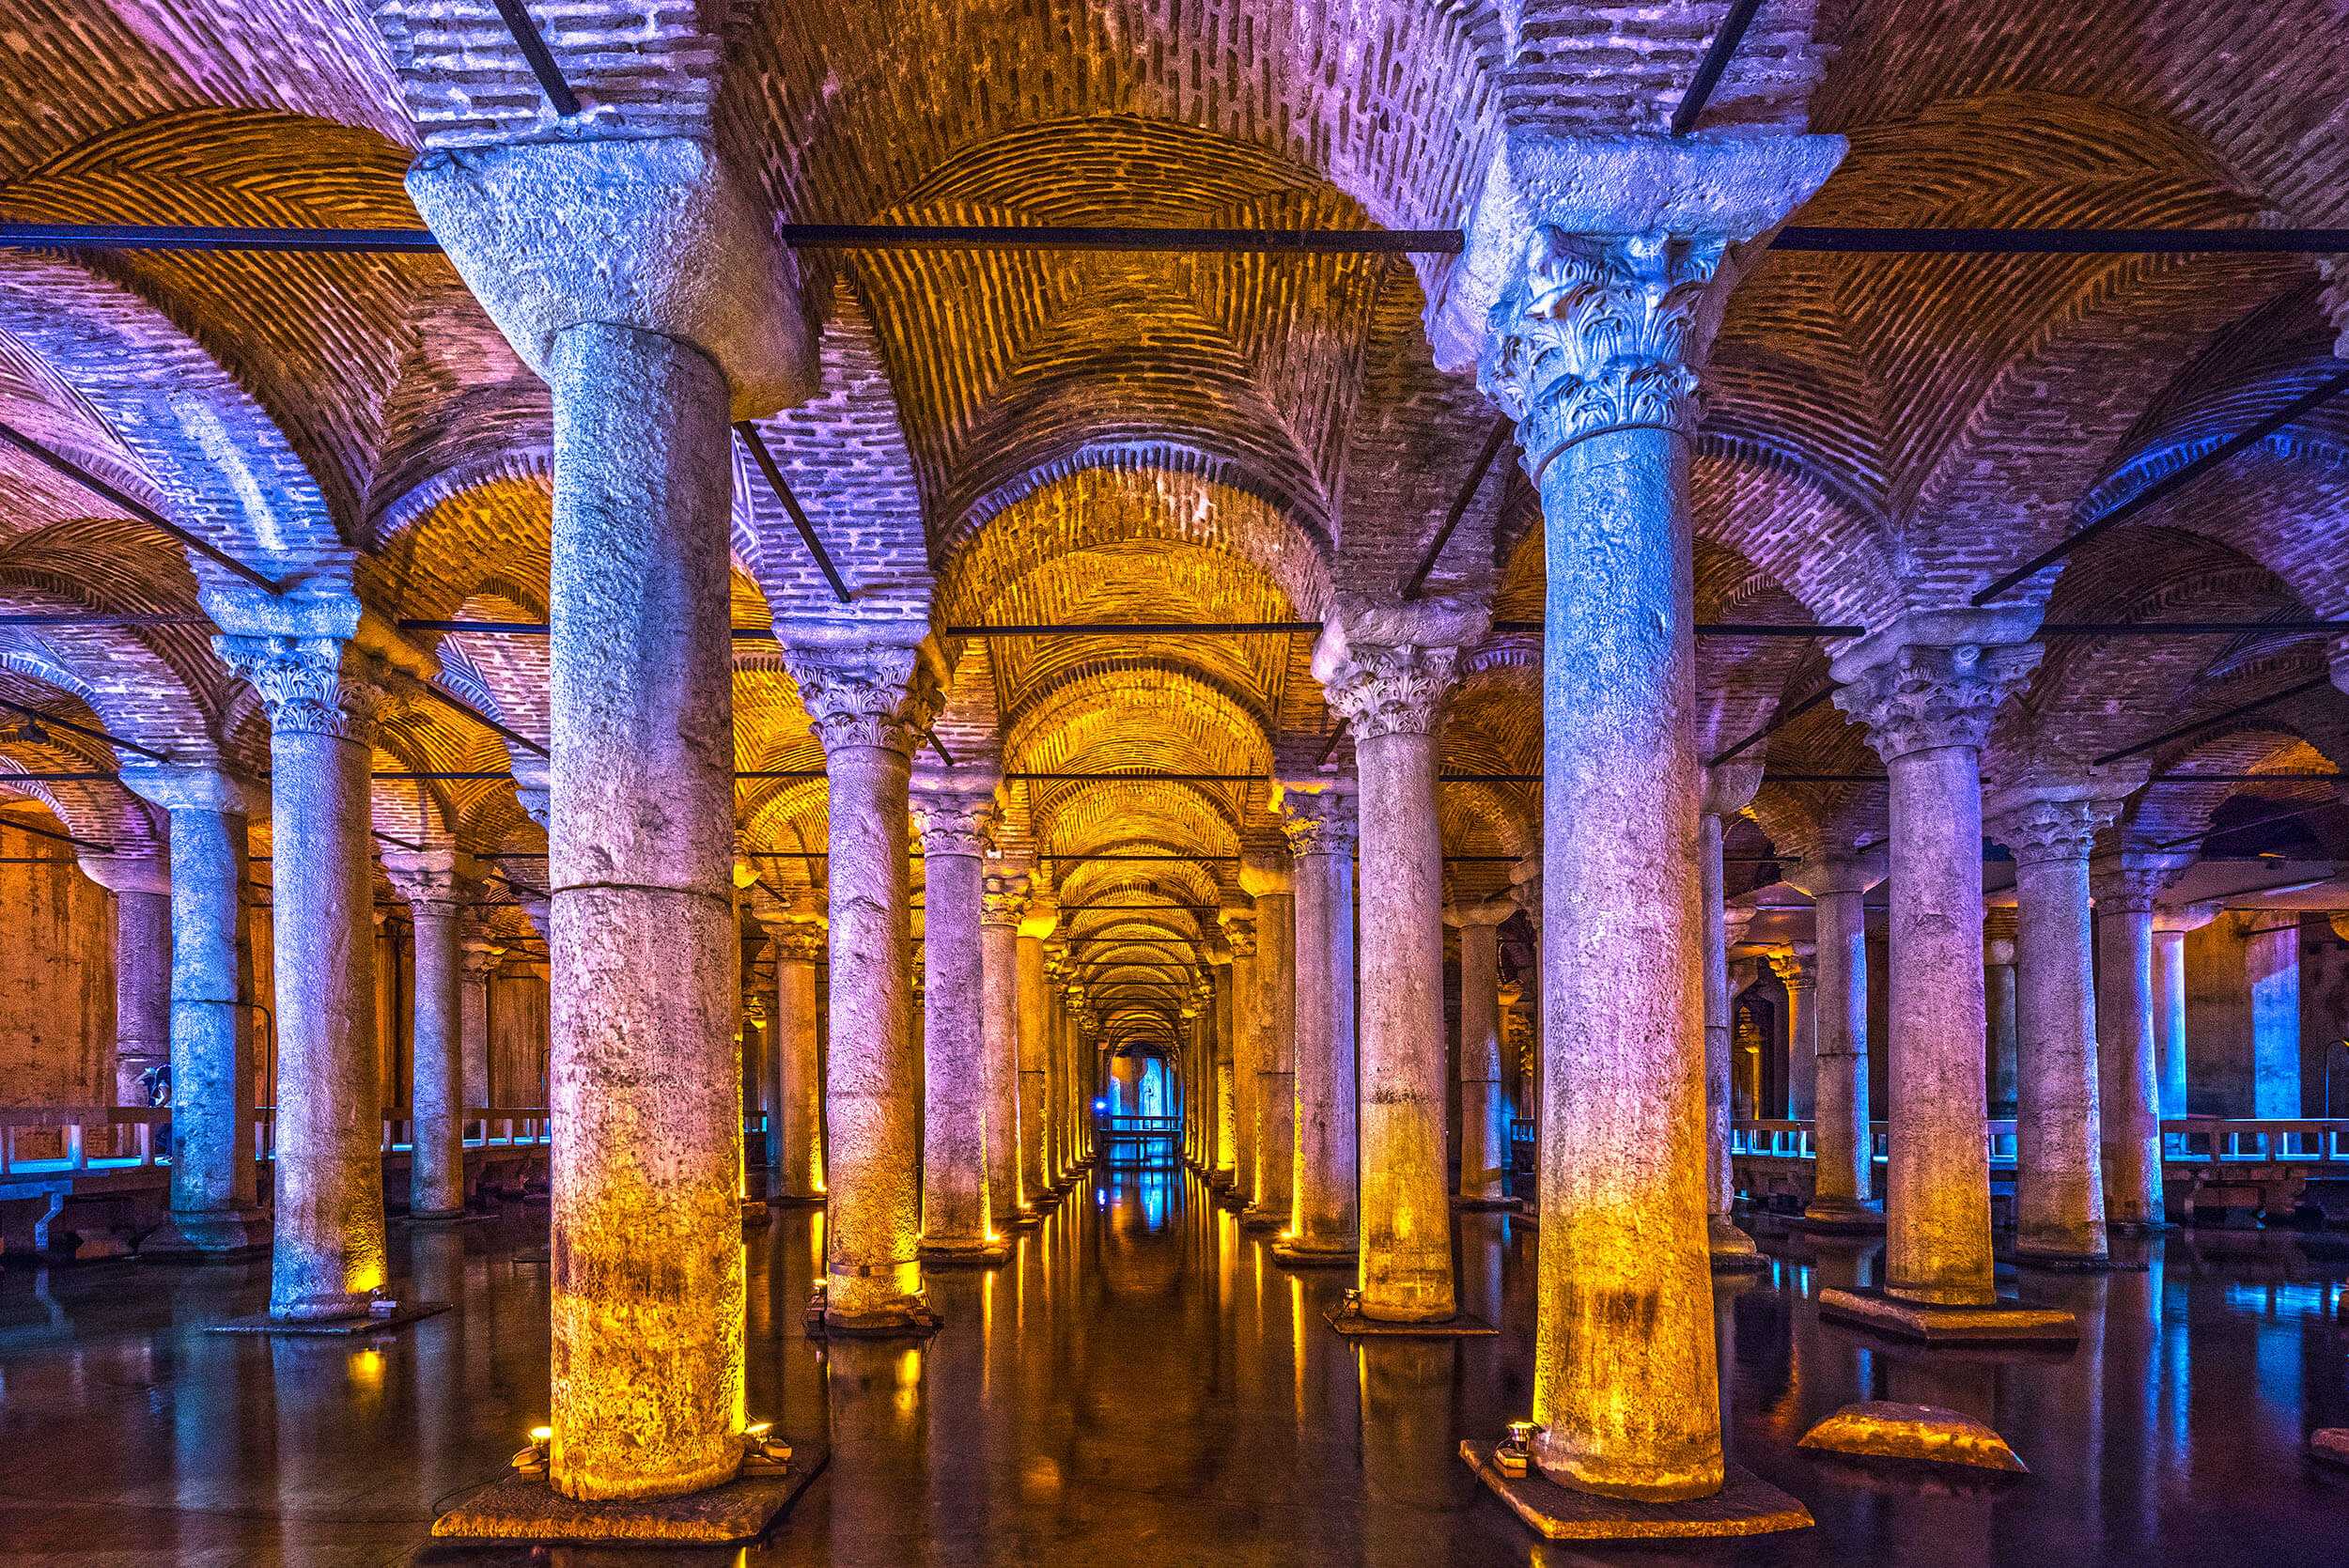 Среди подземных мест Стамбула особой популярность пользуются цистерны Константинополя, часть из которых сегодня являются музеями, тогда как другие функционируют как рестораны